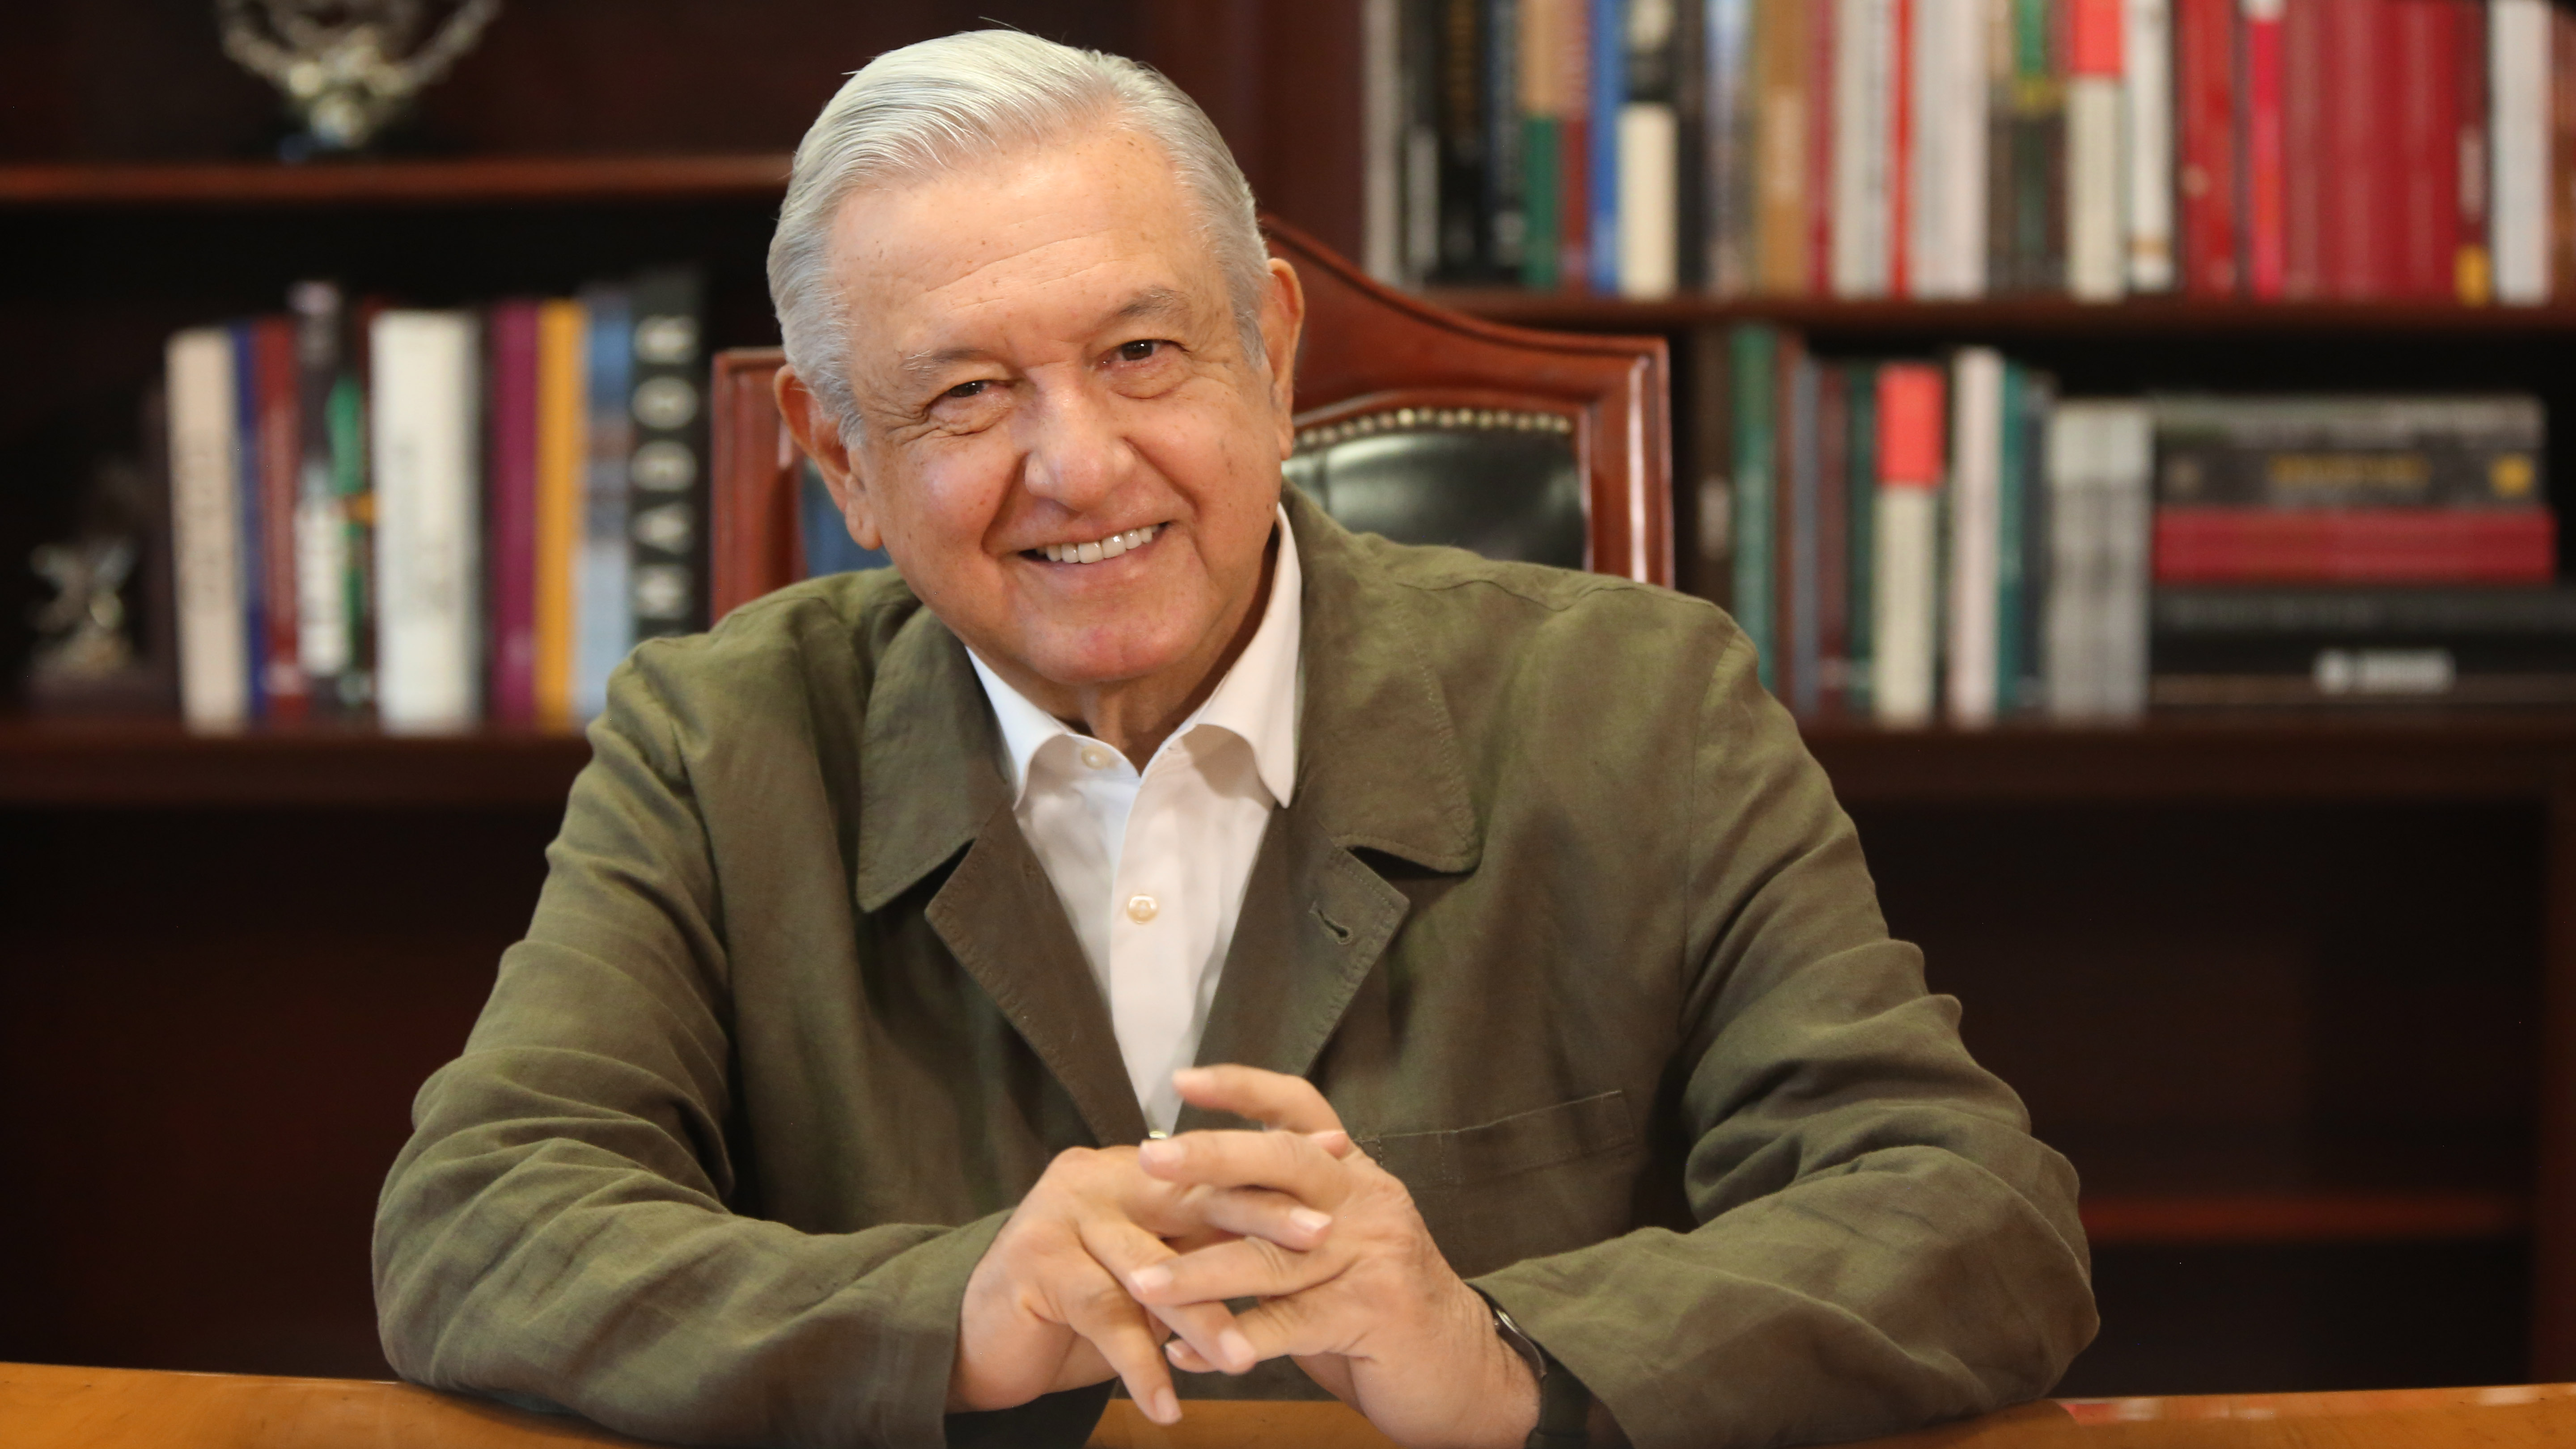 Para Raymundo Riva Palacio la falta absoluta de López Obrador generaría una indeseable inestabilidad por la forma centralizada y absolutista como ejerce el poder (Foto: Gobierno de México)